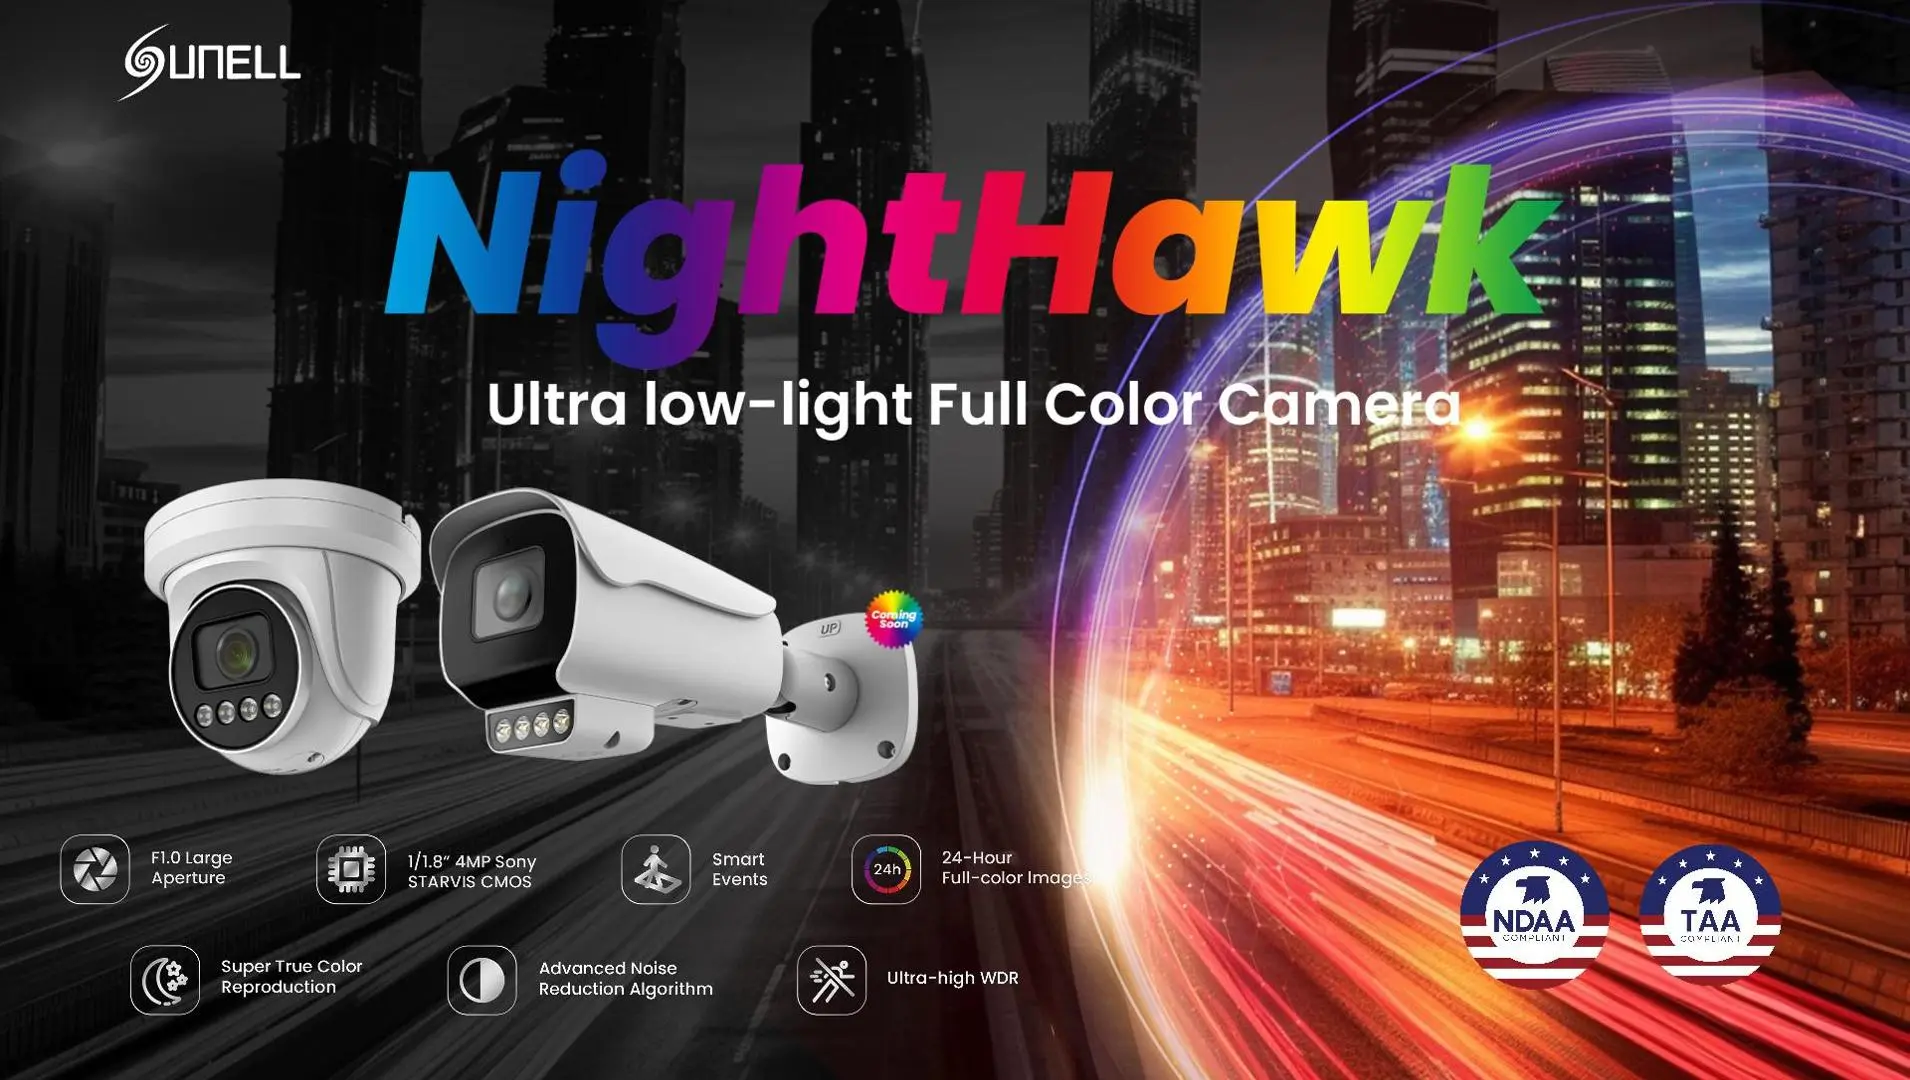 Sunell Nighthawk Intelligente Vollfarbkamera mit extrem schlechten Lichtverhältnissen